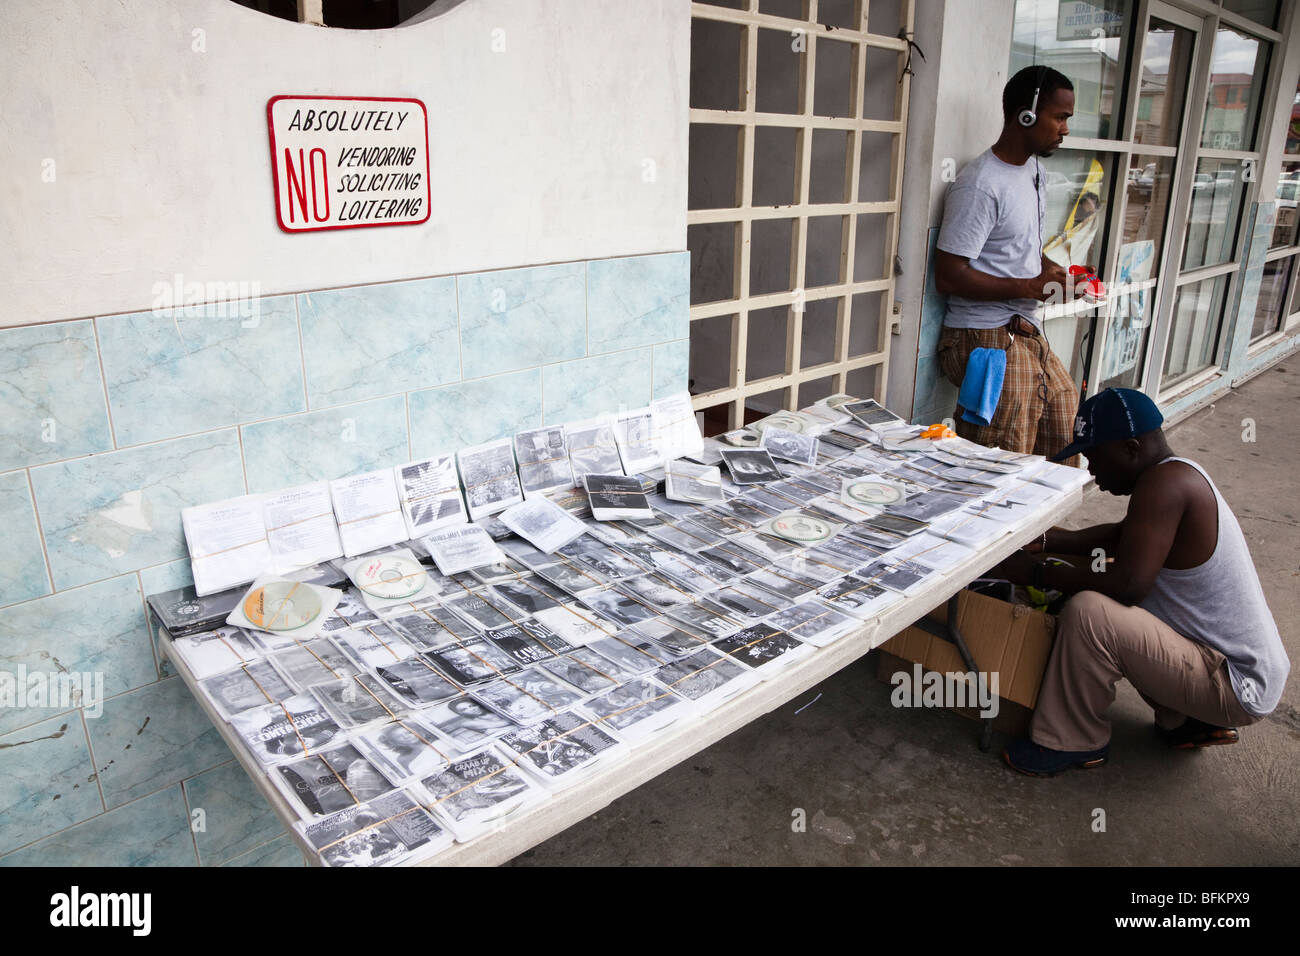 Proveedor ilegal la venta pirata de CDs y videos desde una parada en St Johns Town, Antigua, West Indies Foto de stock